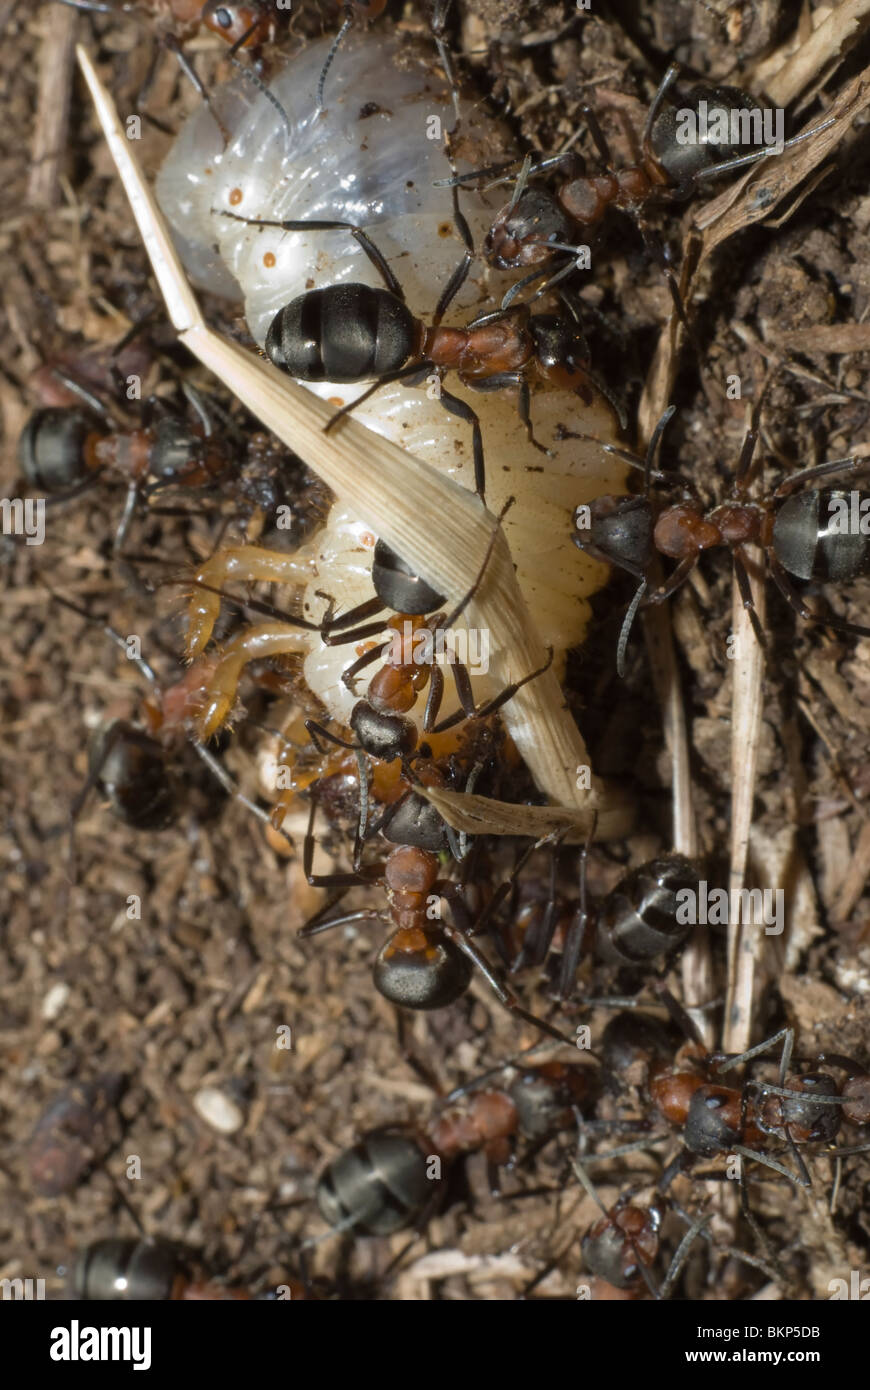 Ameisen töten den grub Stockfotografie - Alamy